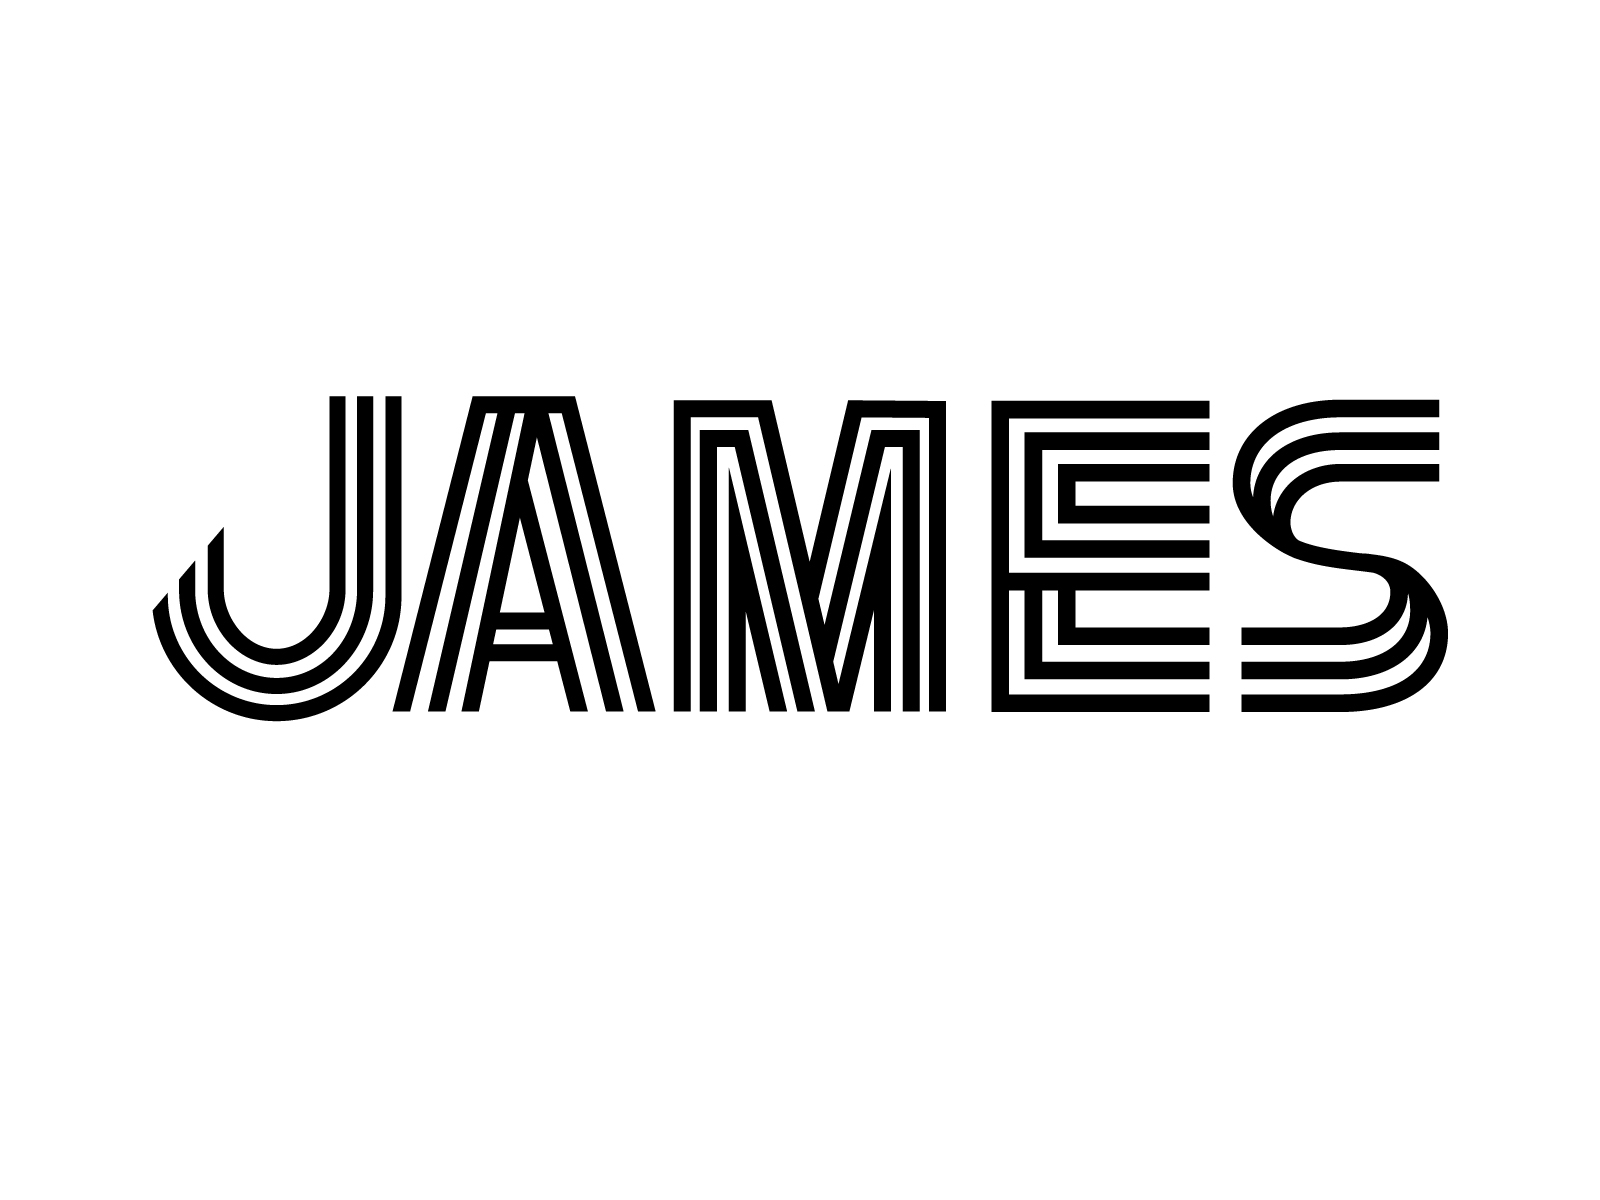 James - Inline WIP by Jordan Grimes on Dribbble